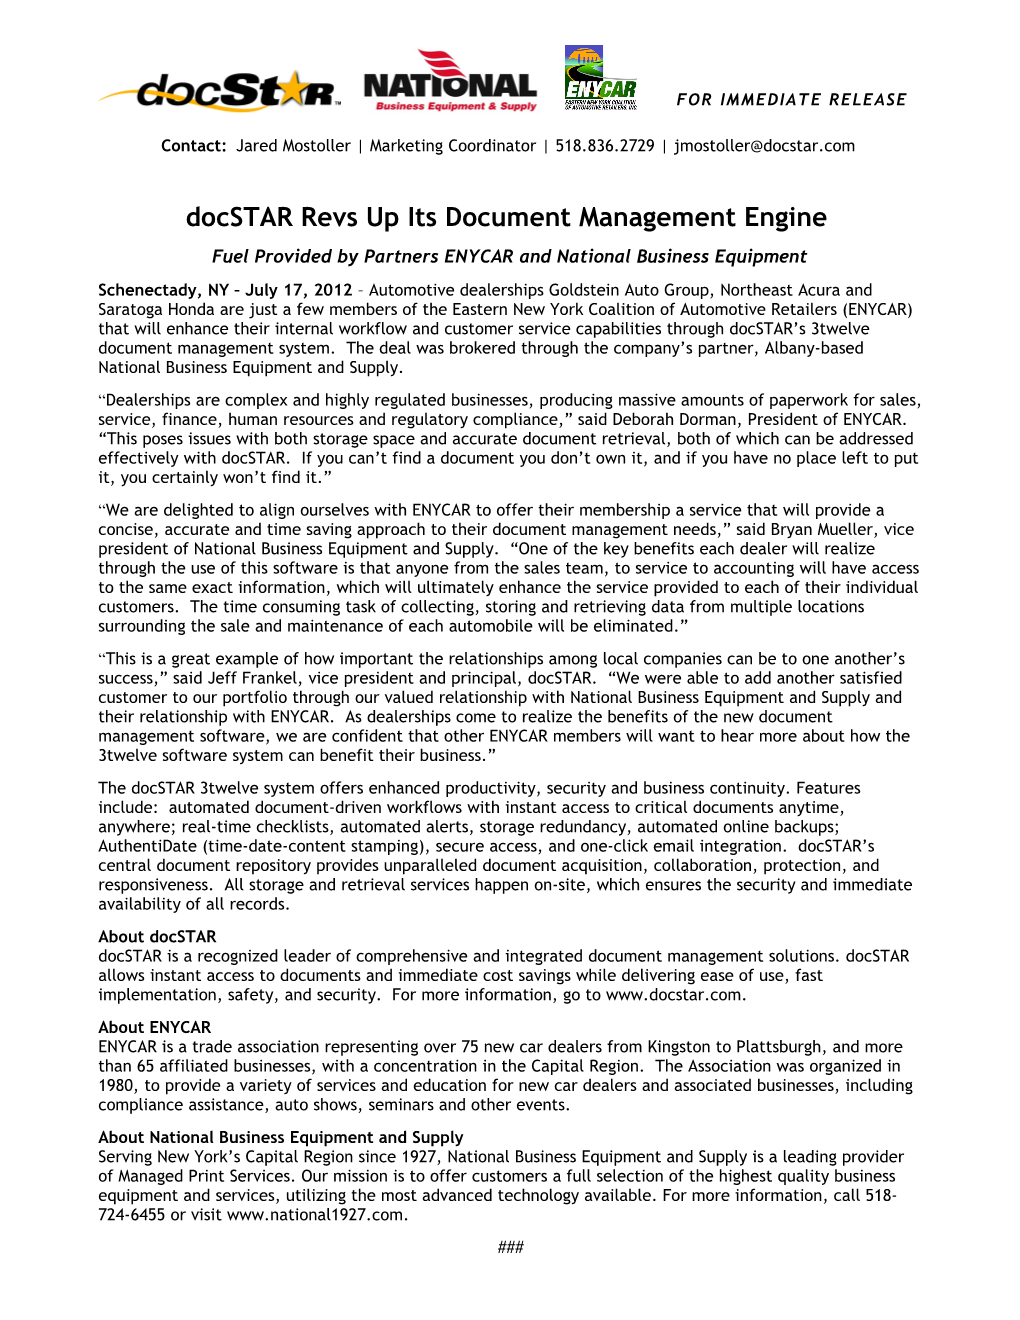 Docstar Revs up Its Document Management Engine